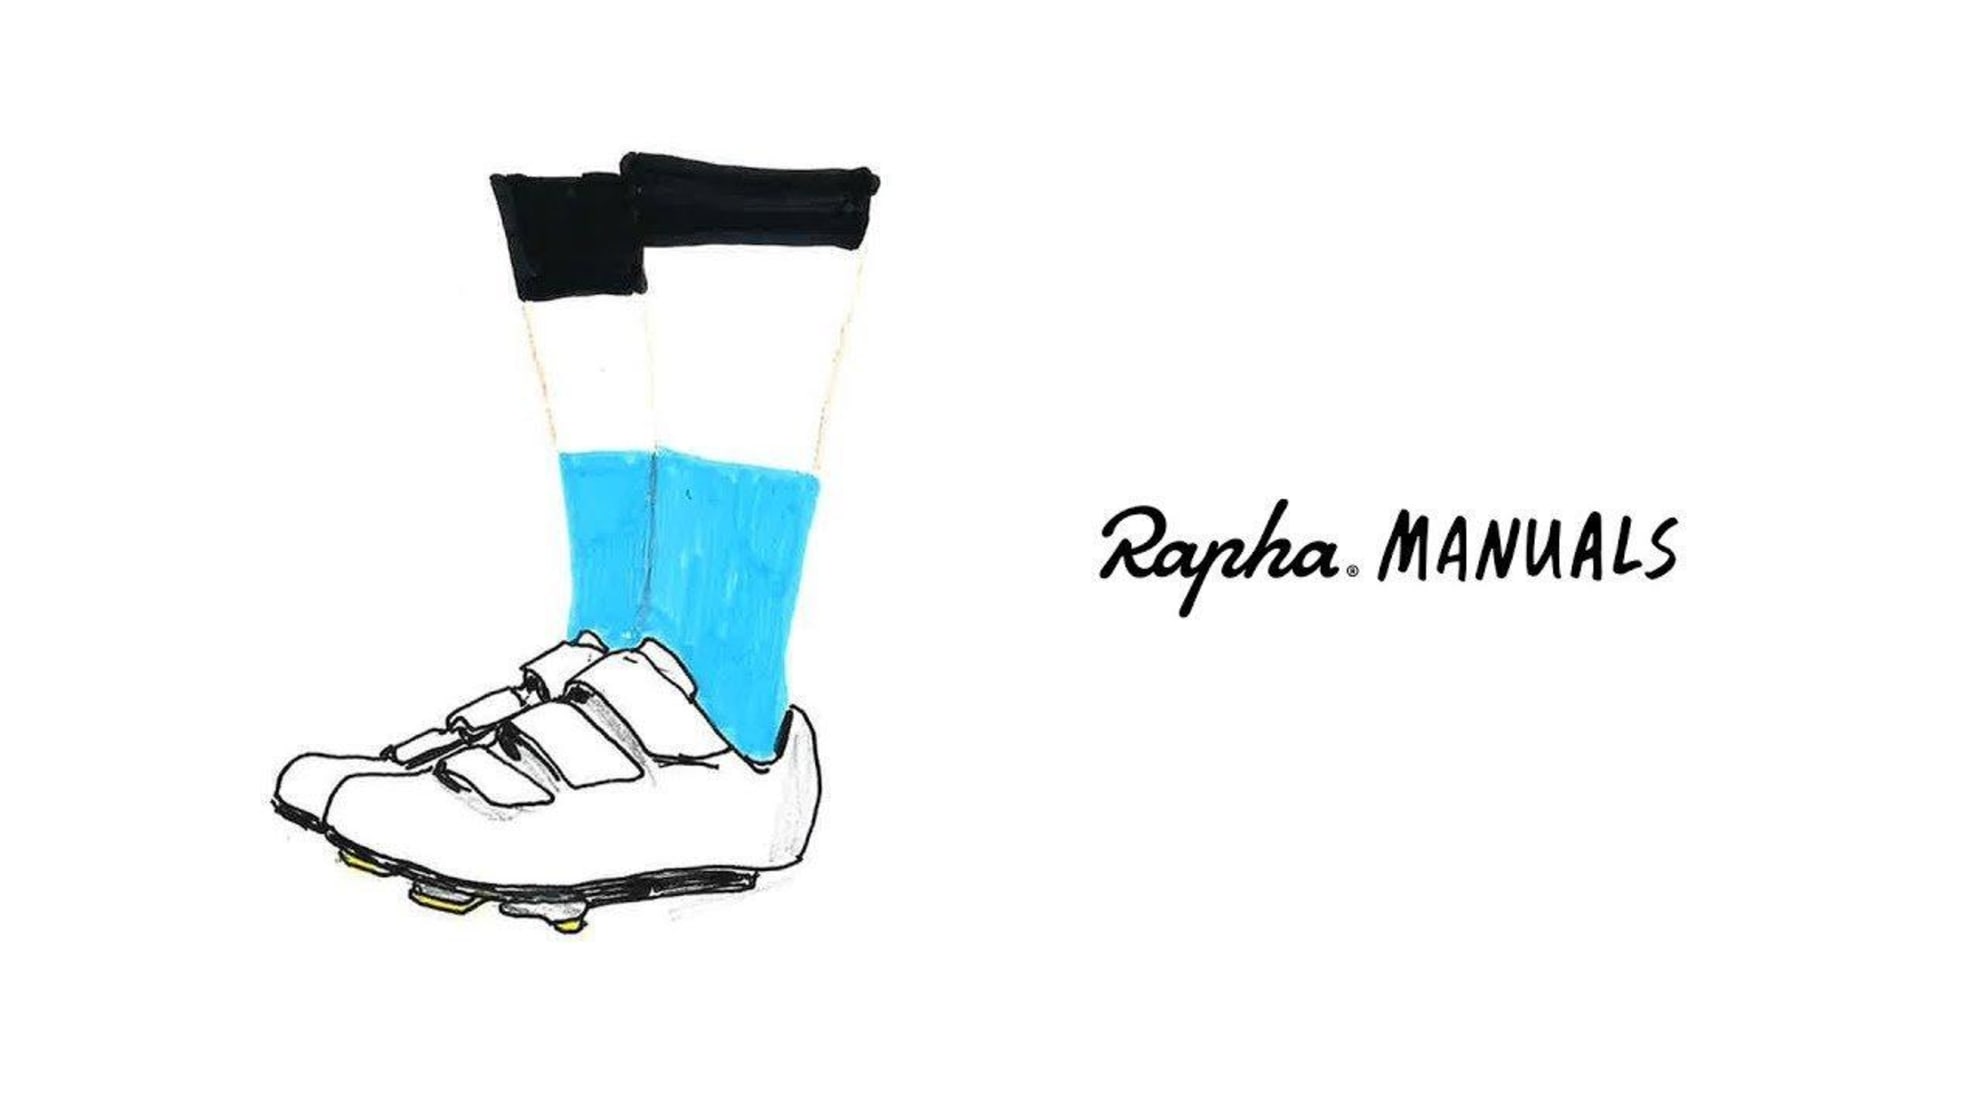 Rapha Manuals: A Few Key Pieces